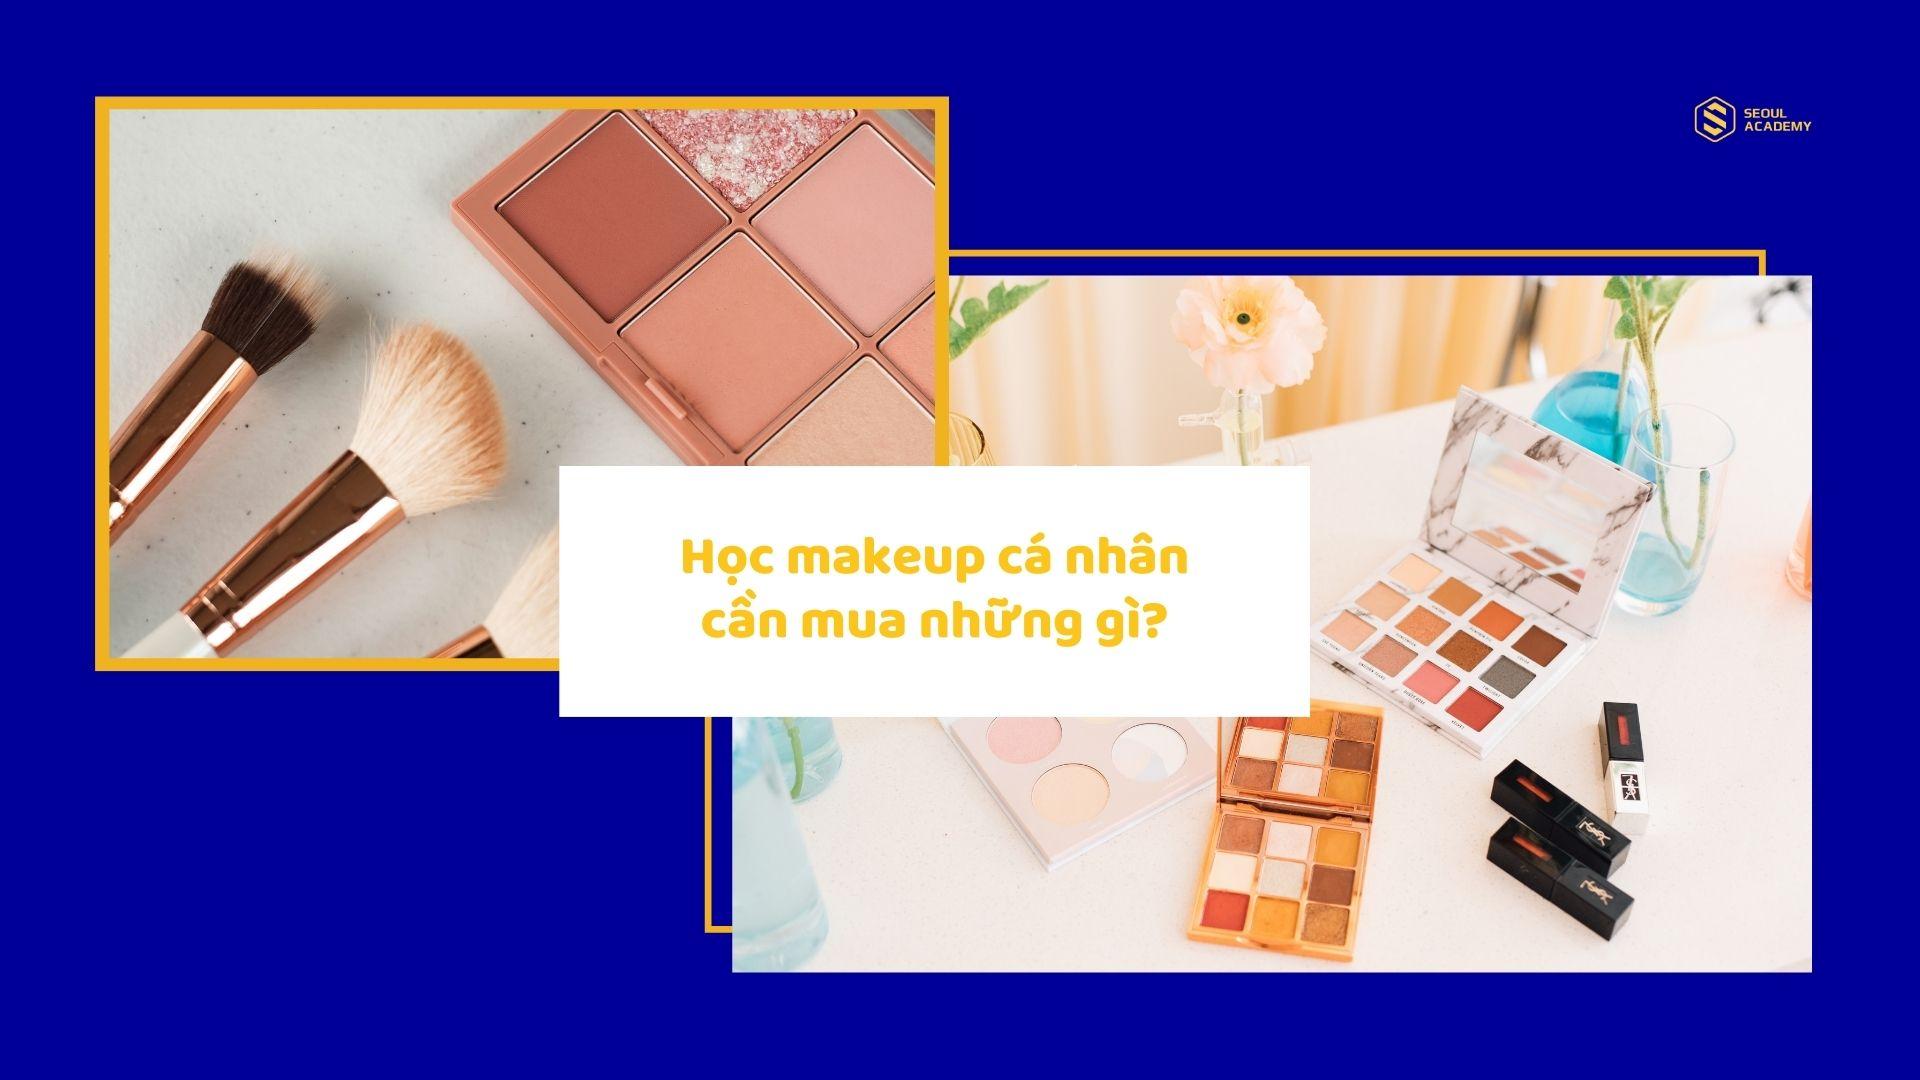 Học makeup cá nhân cần mua những gì? 17 Sản phẩm cần có